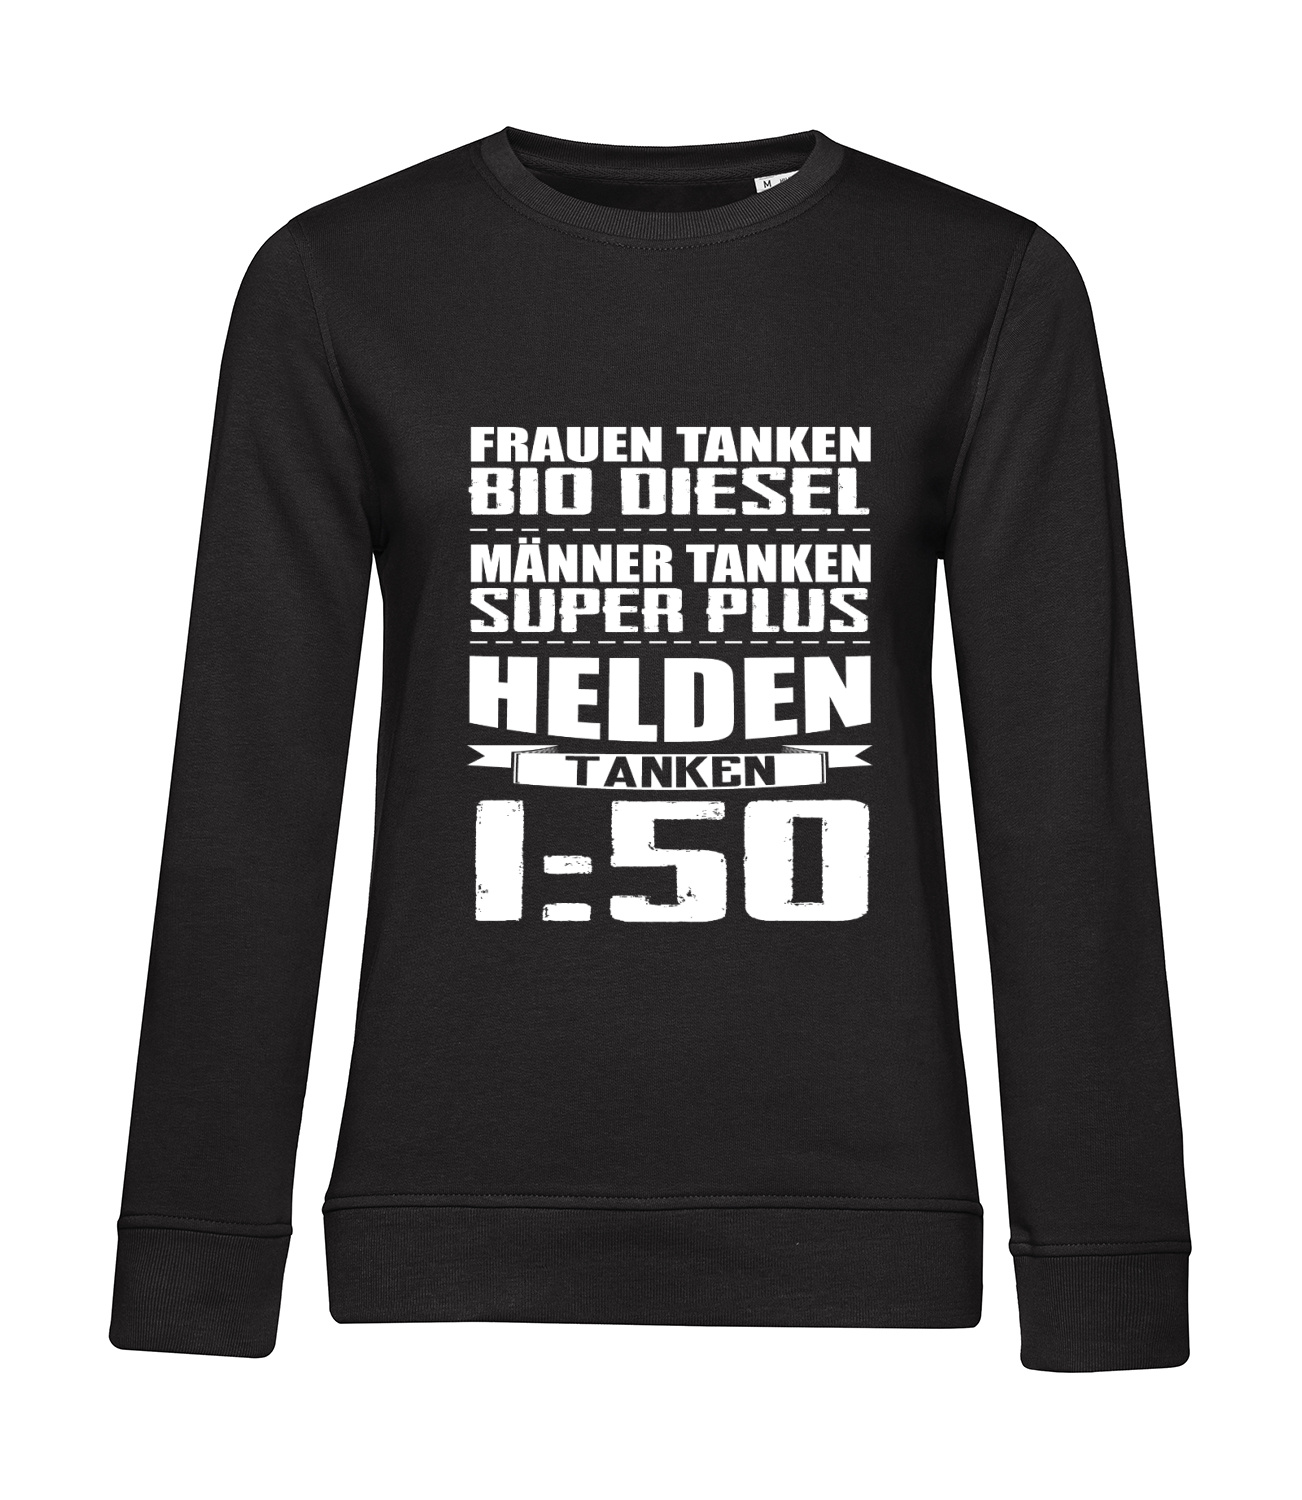 Nachhaltiges Sweatshirt Damen 2Takter - Helden tanken 1 zu 50